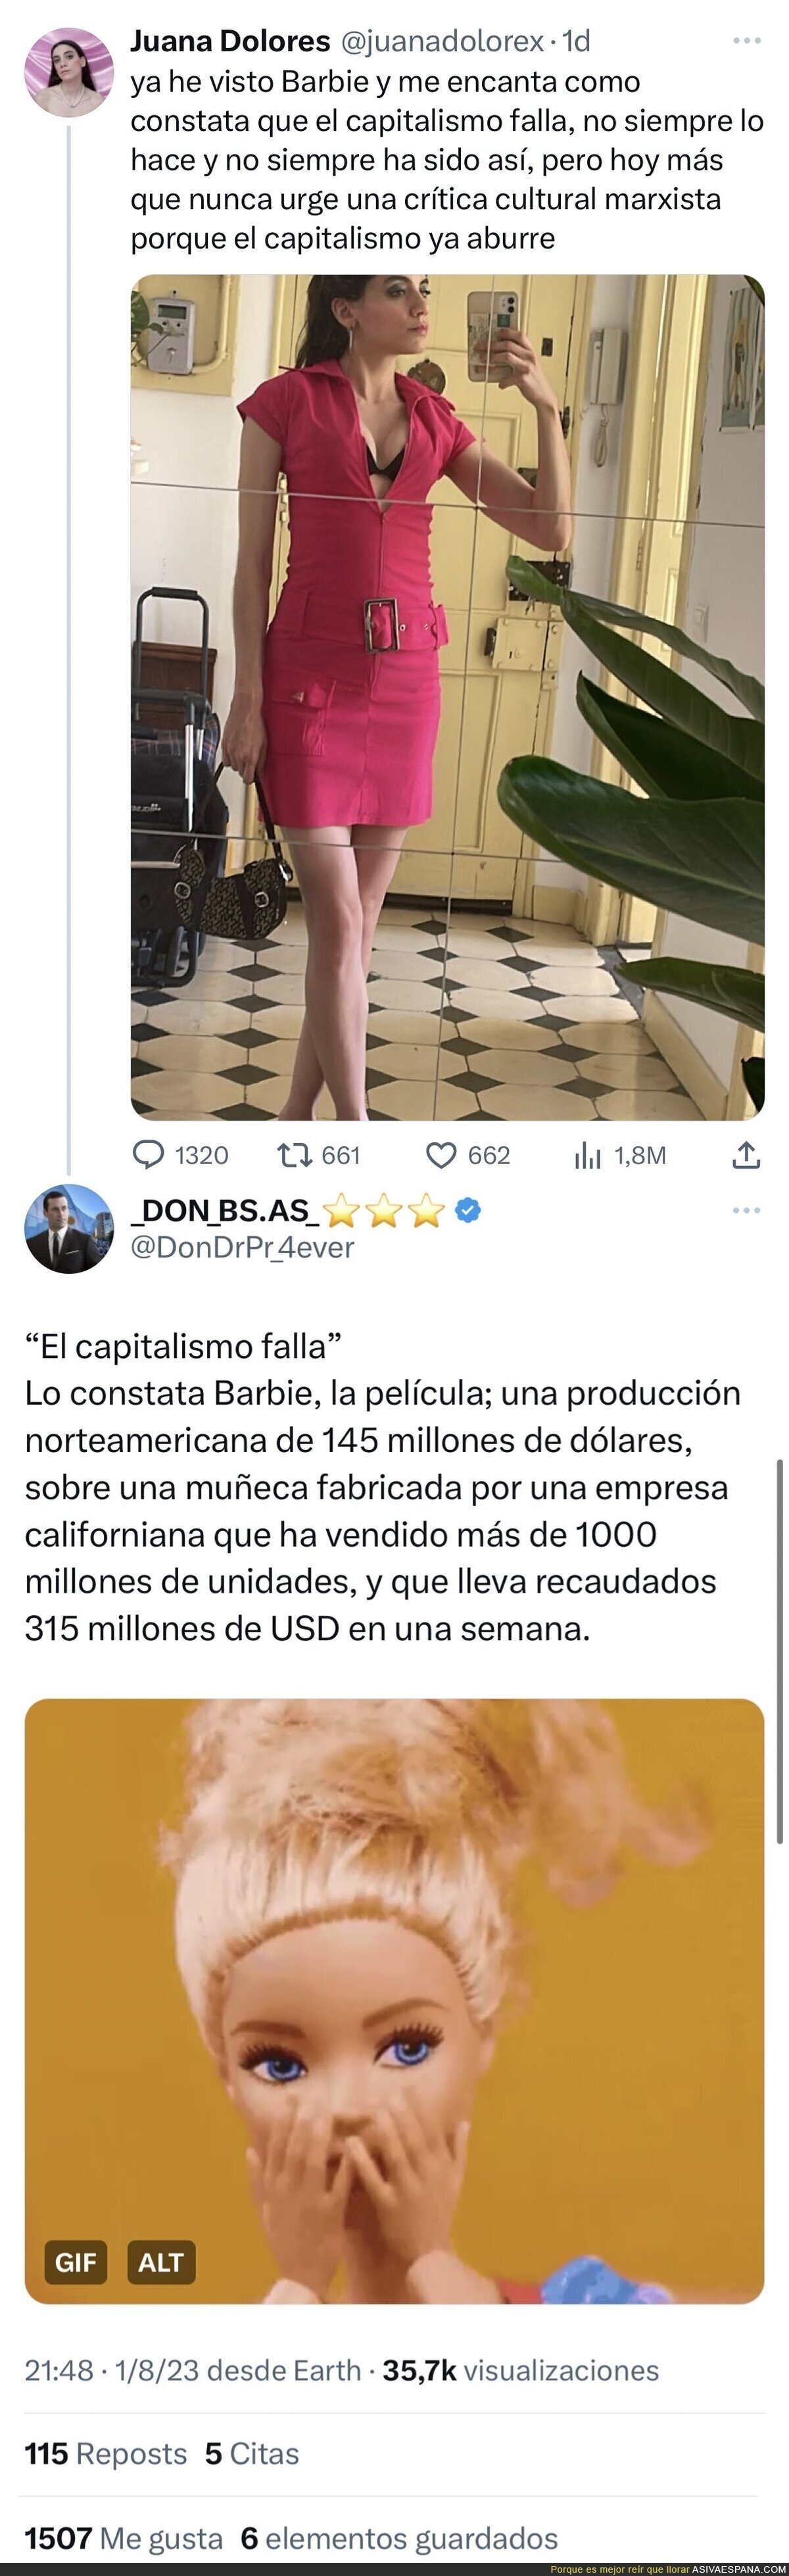 El capitalismo y Barbie